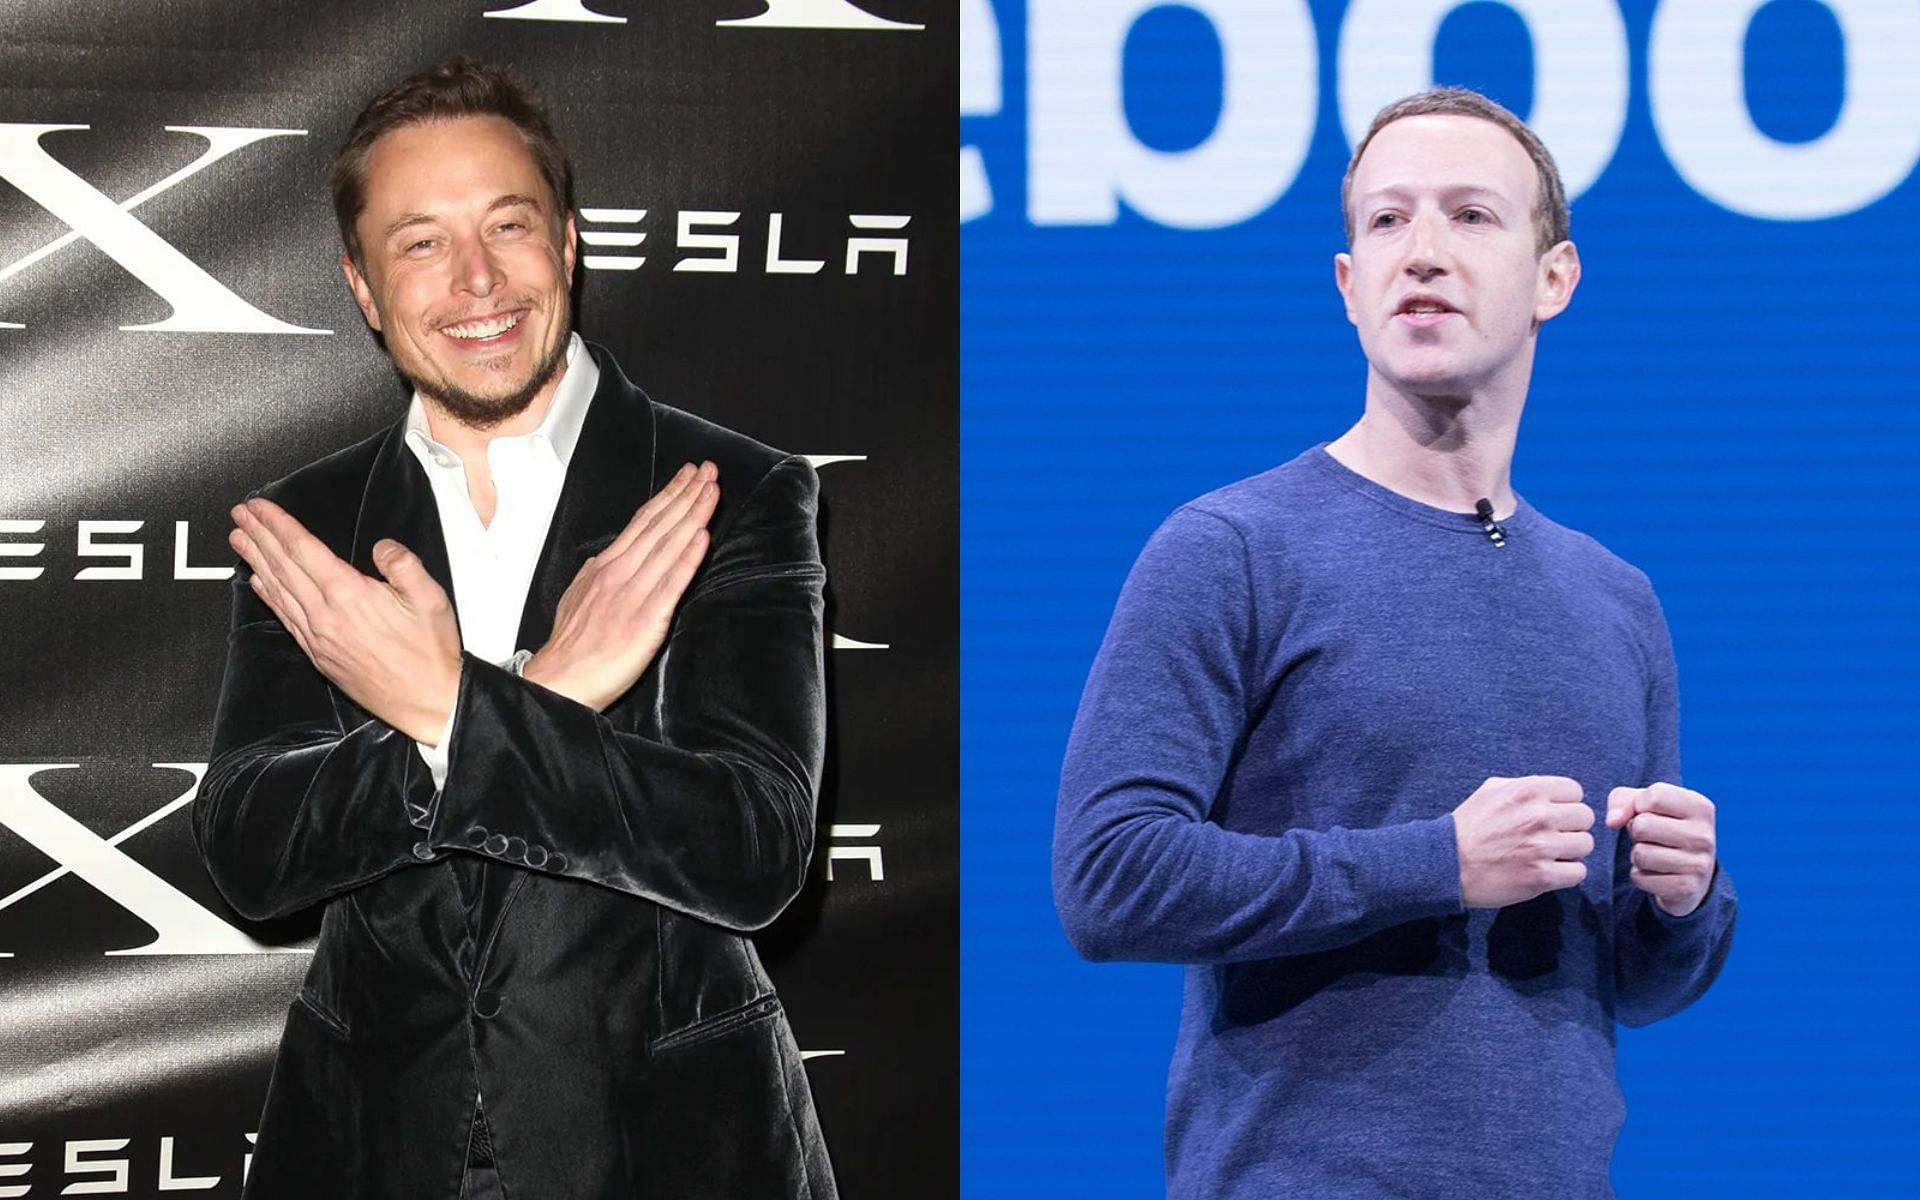 Elon Musk (Left), Mark Zuckerberg (Right) [Image courtesy: @elonmusk on Instagram, @AnthonyQuintano on Twitter]